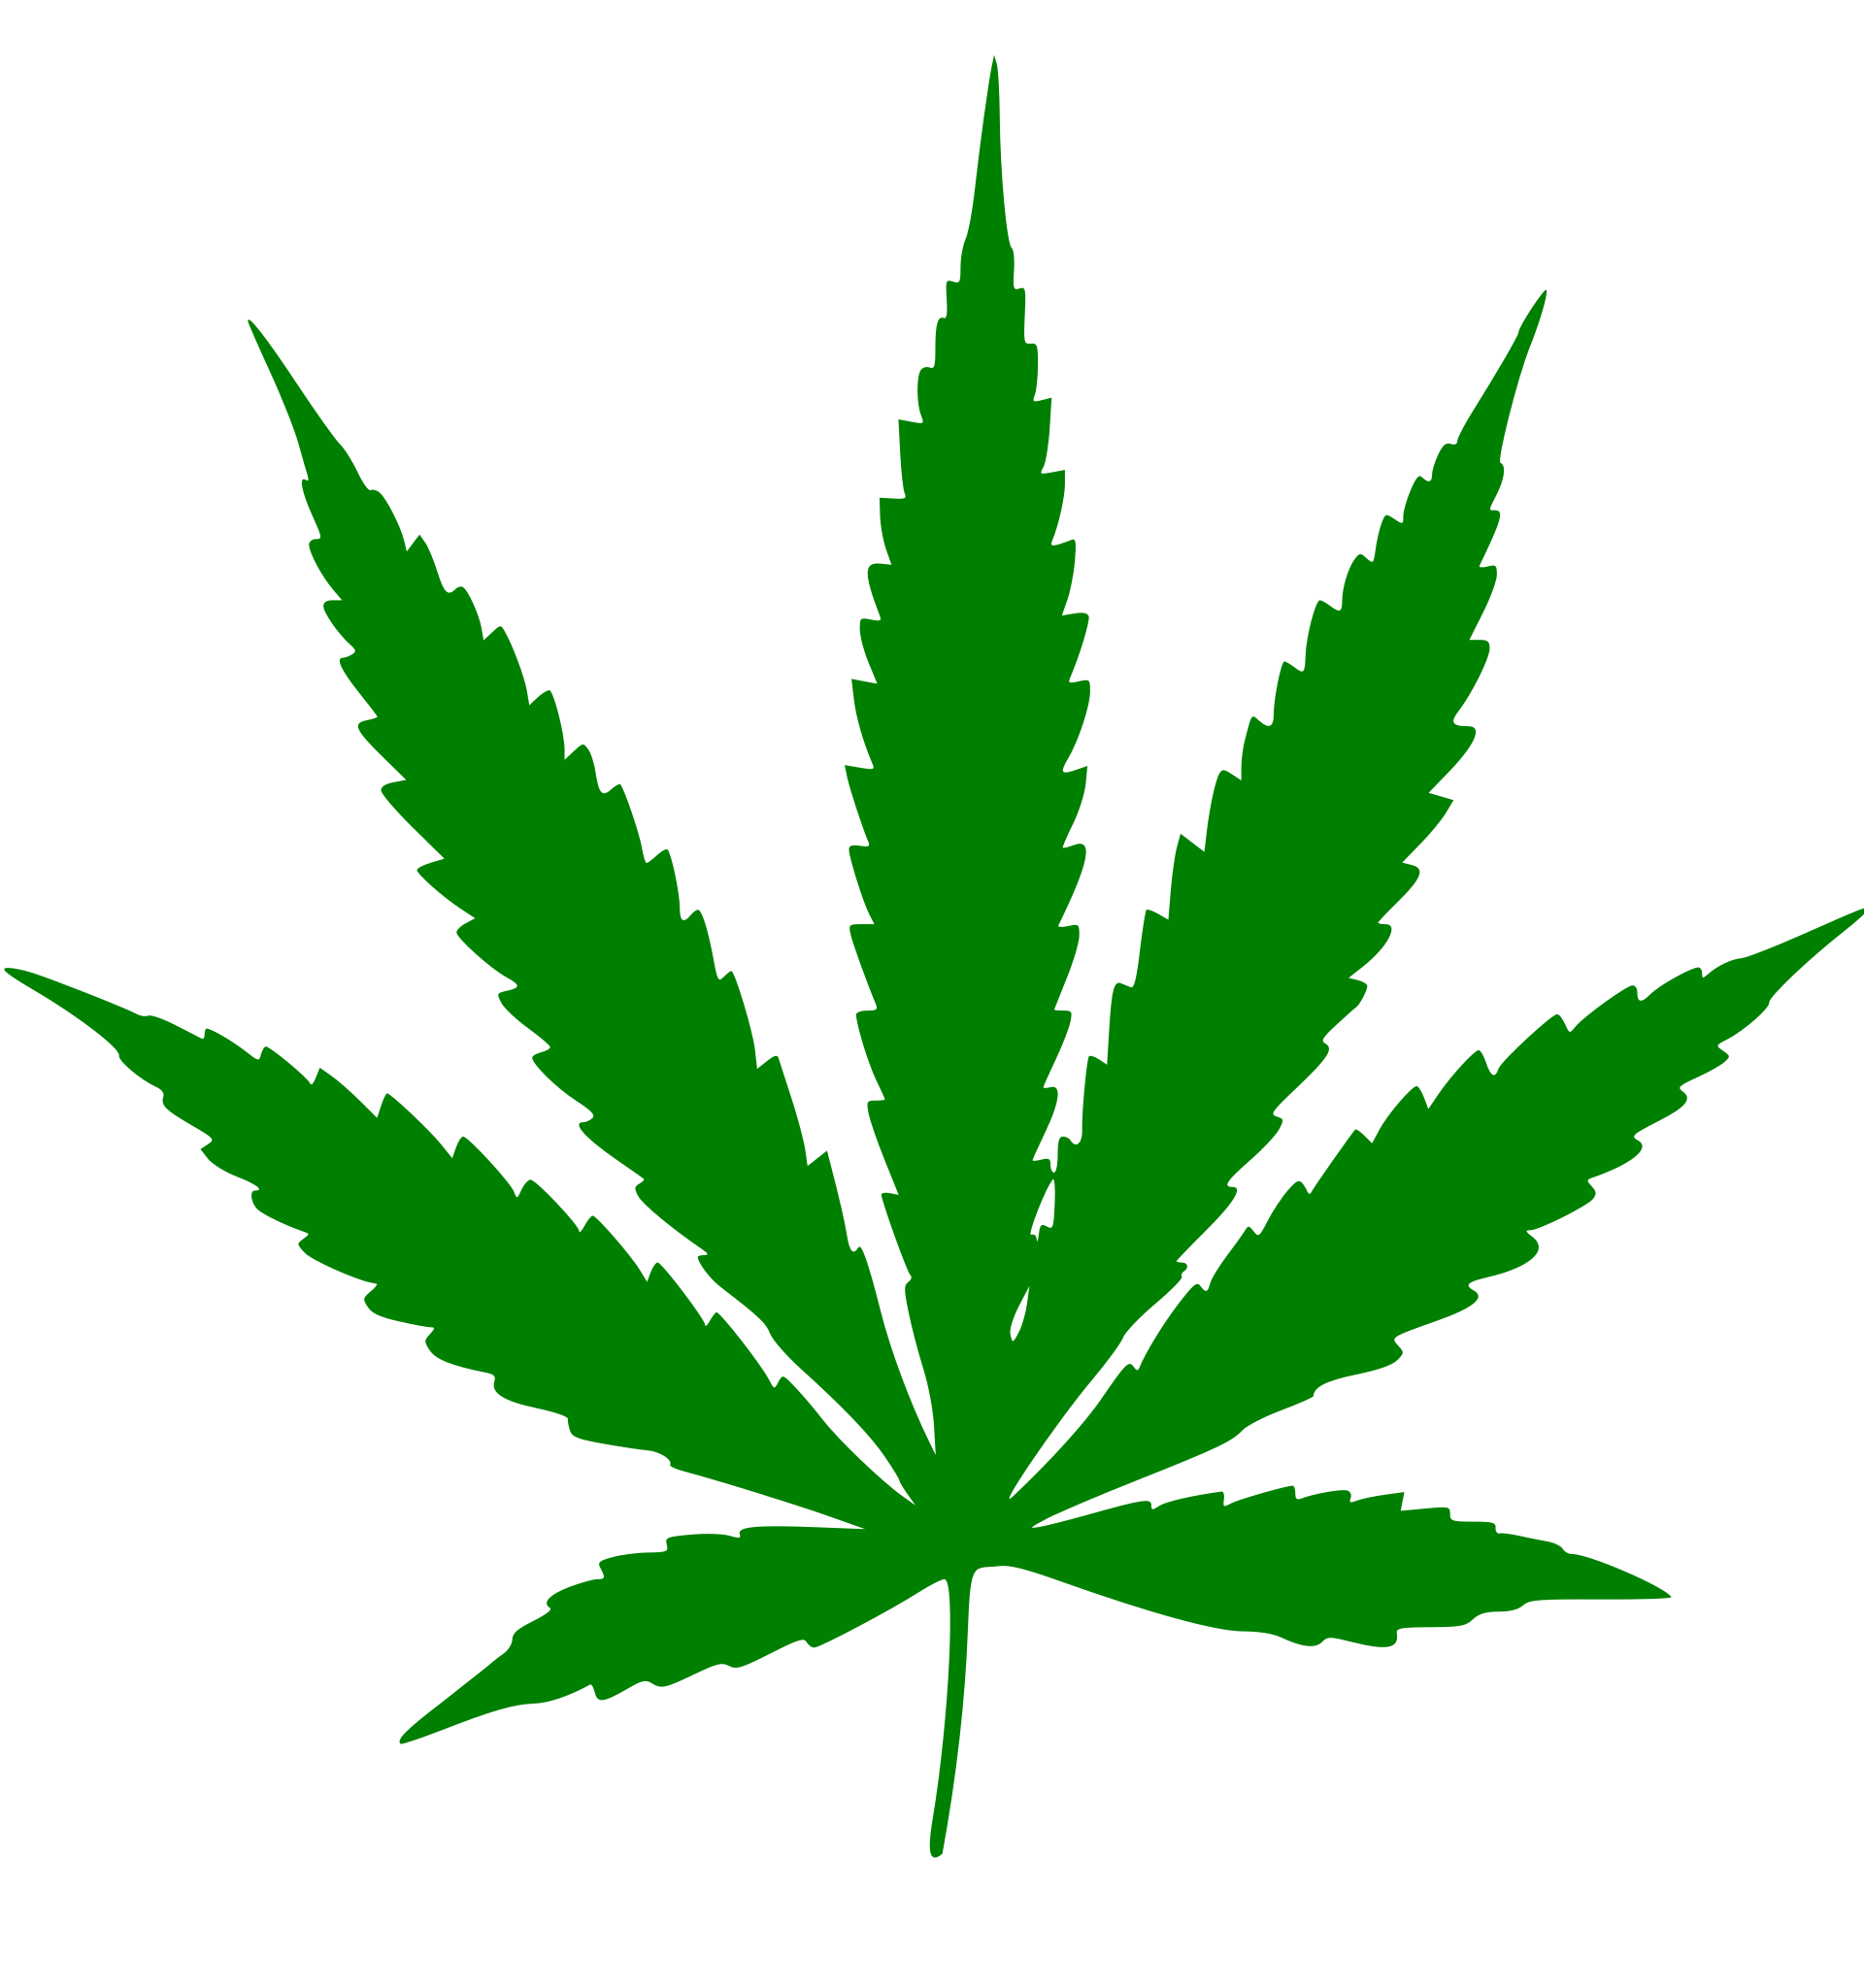 A cannabis leaf image.